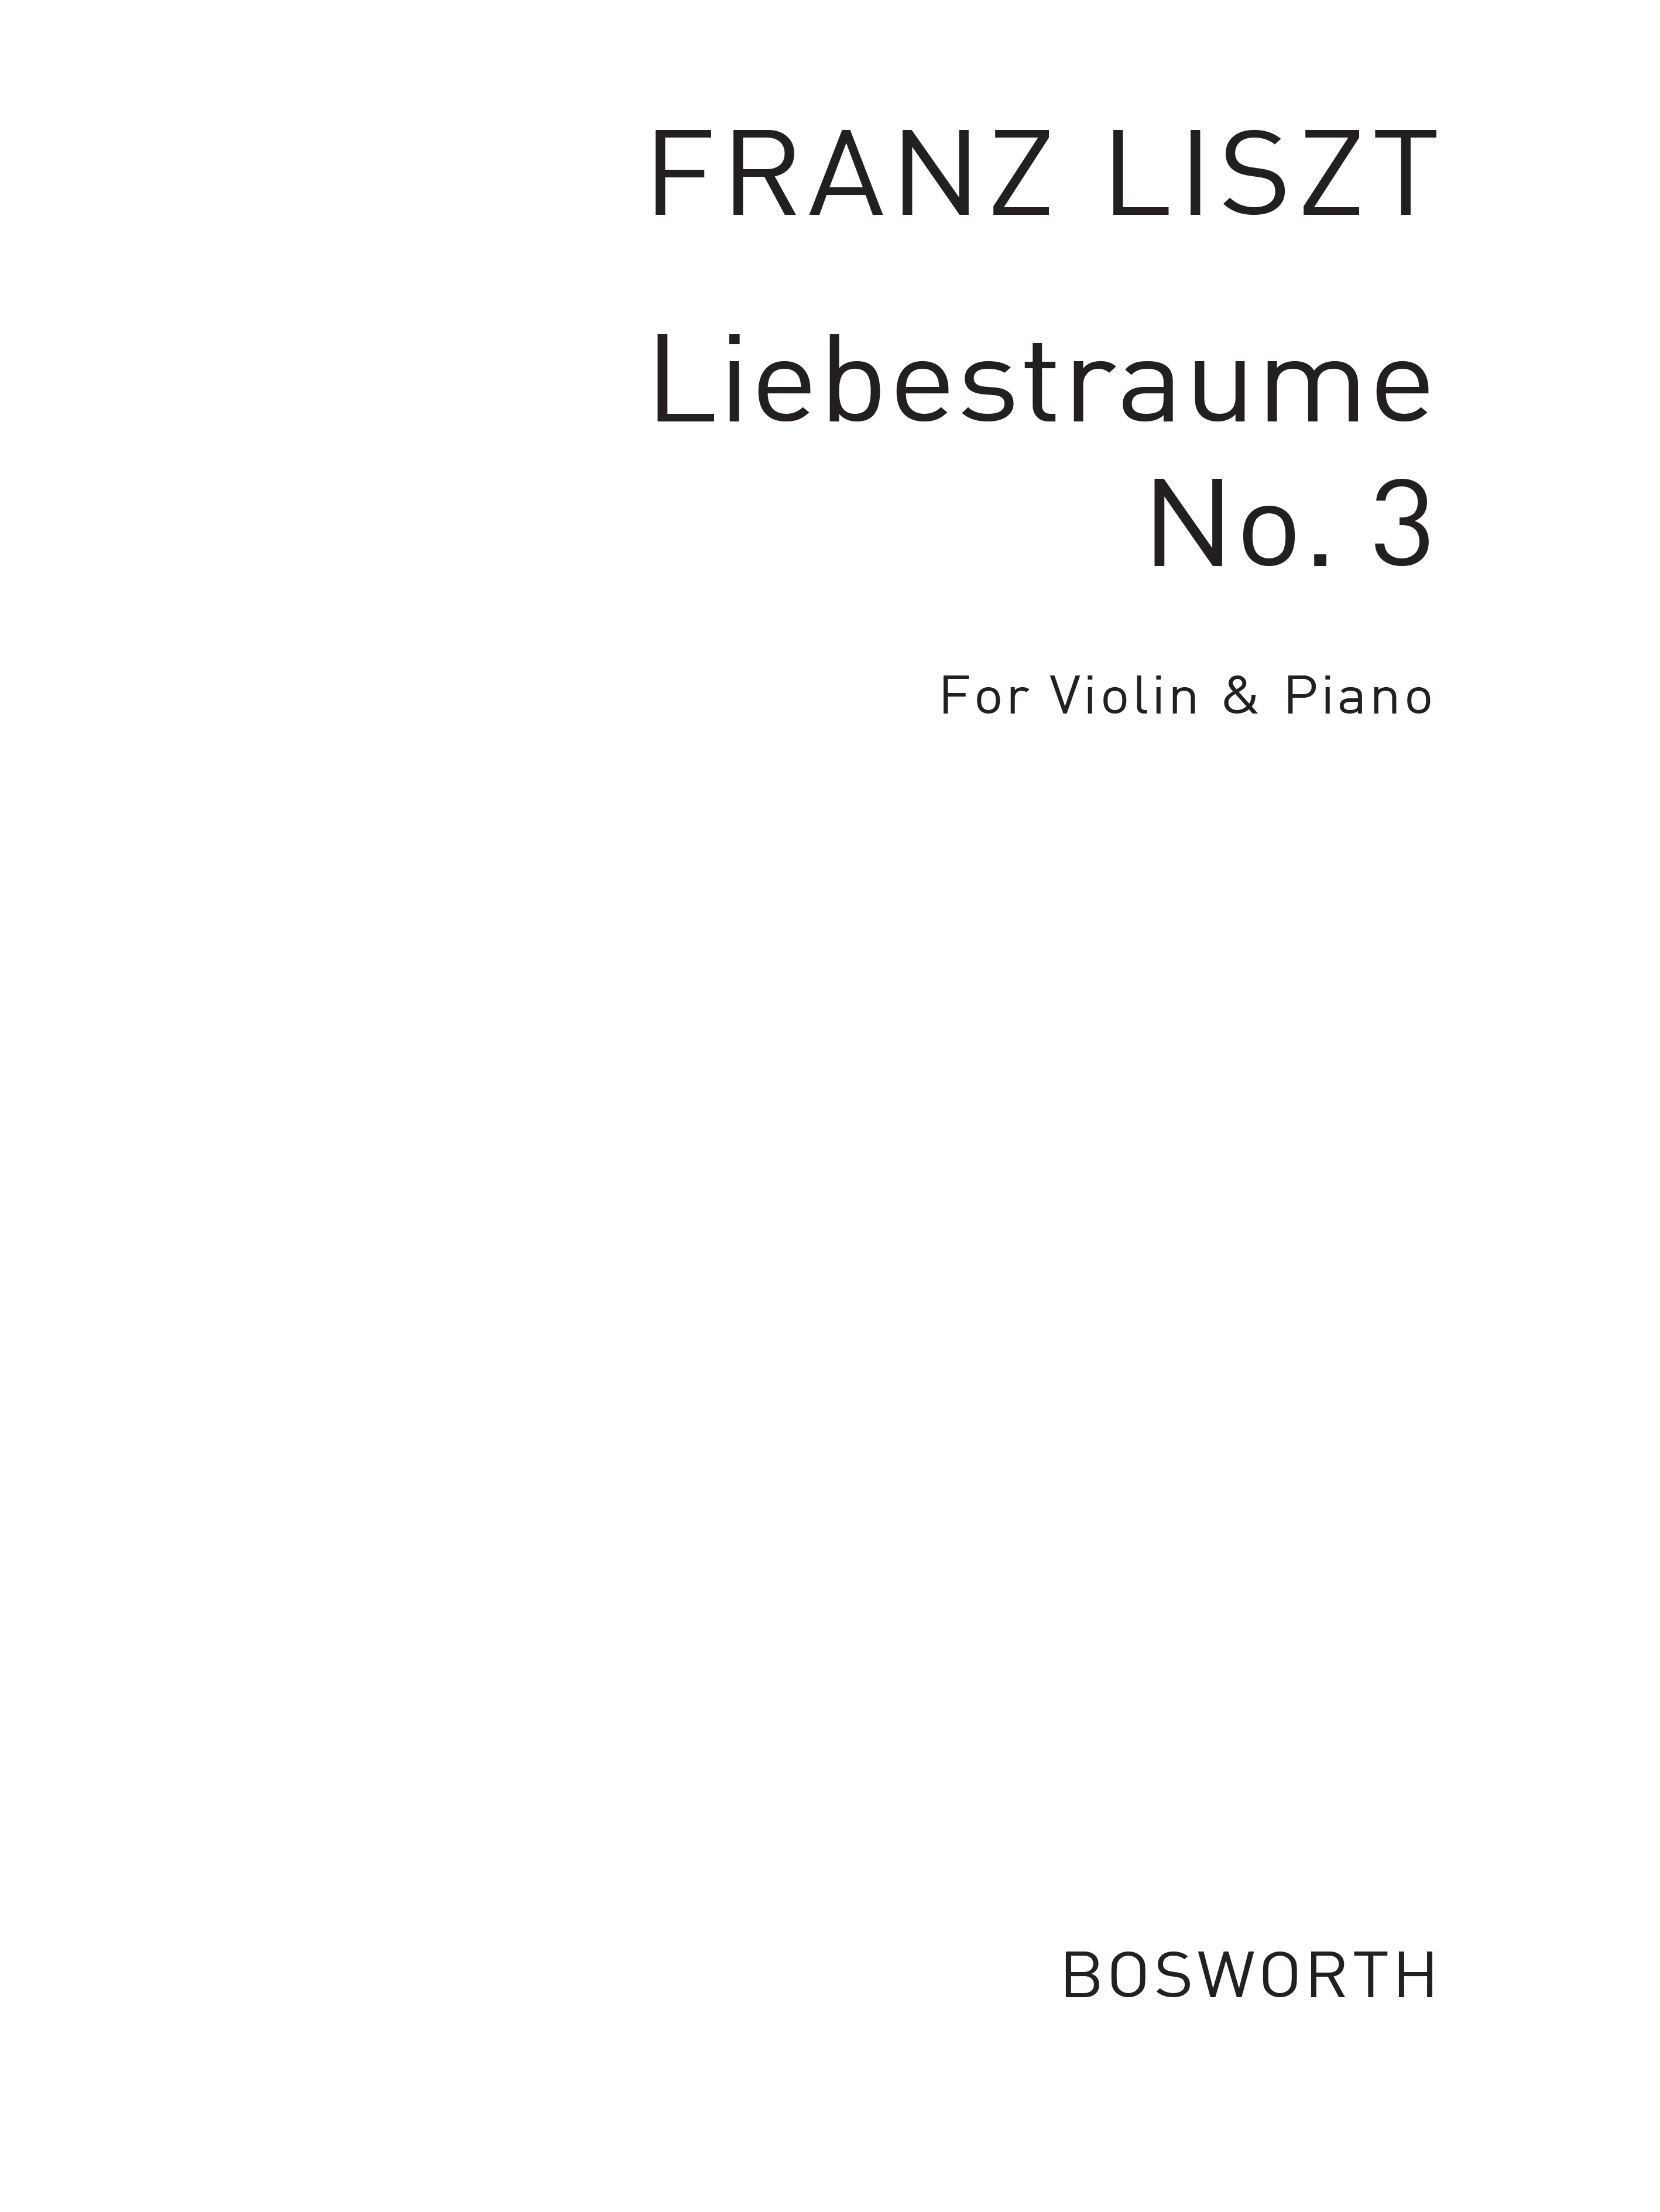 Franz Liszt: Liebestraume No.3: Violin: Instrumental Work